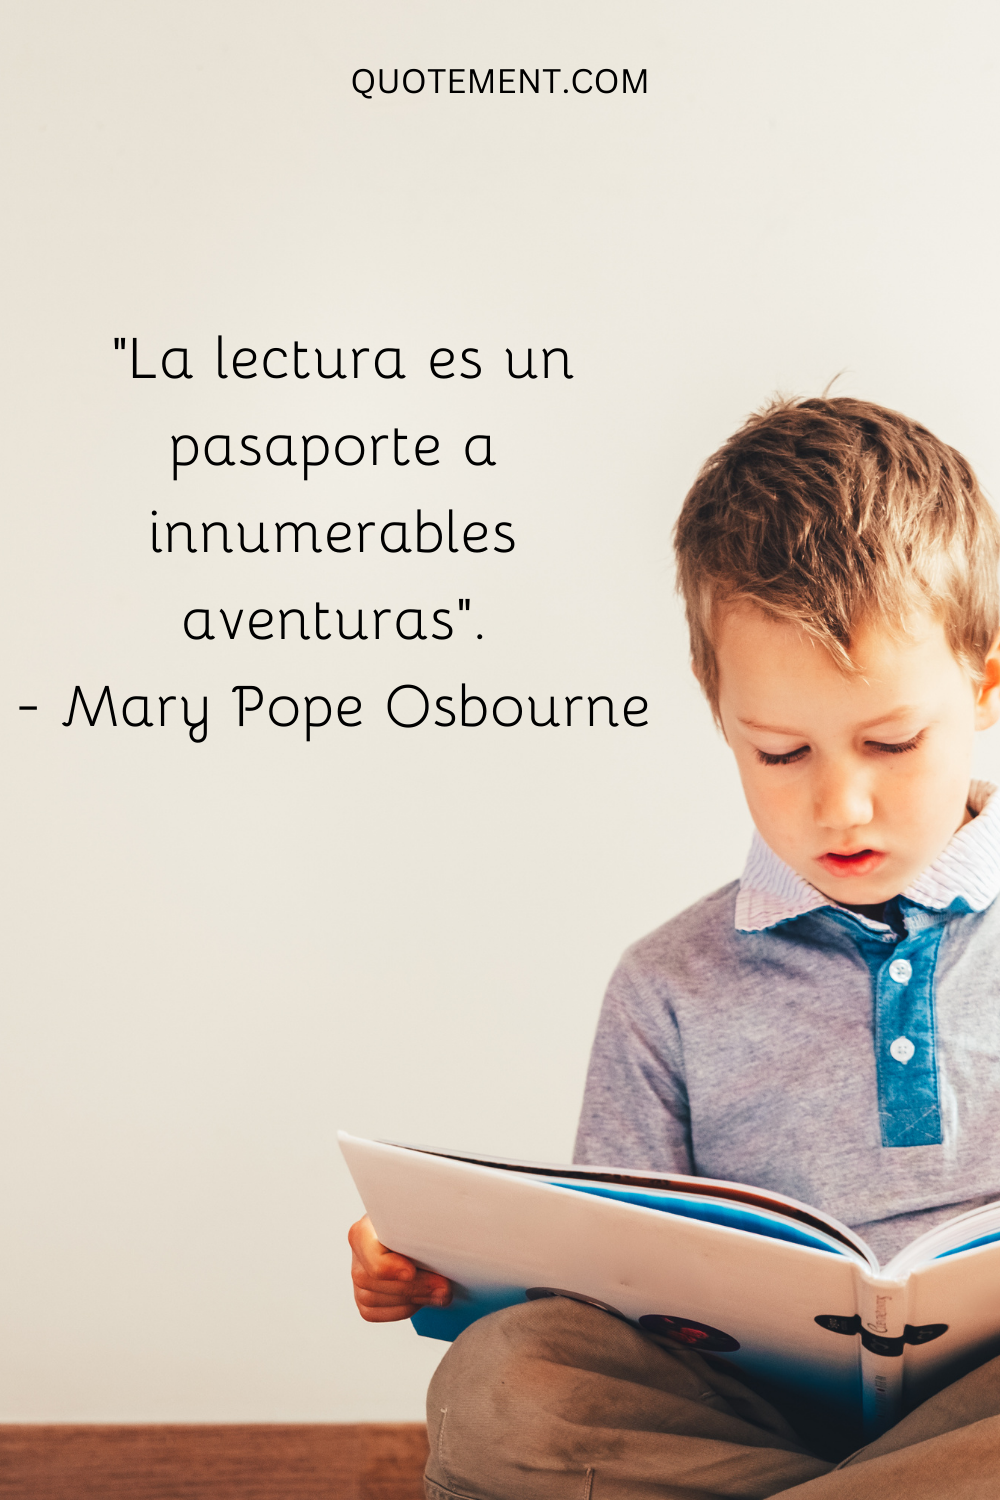 "La lectura es un pasaporte a innumerables aventuras". - Mary Pope Osbourne